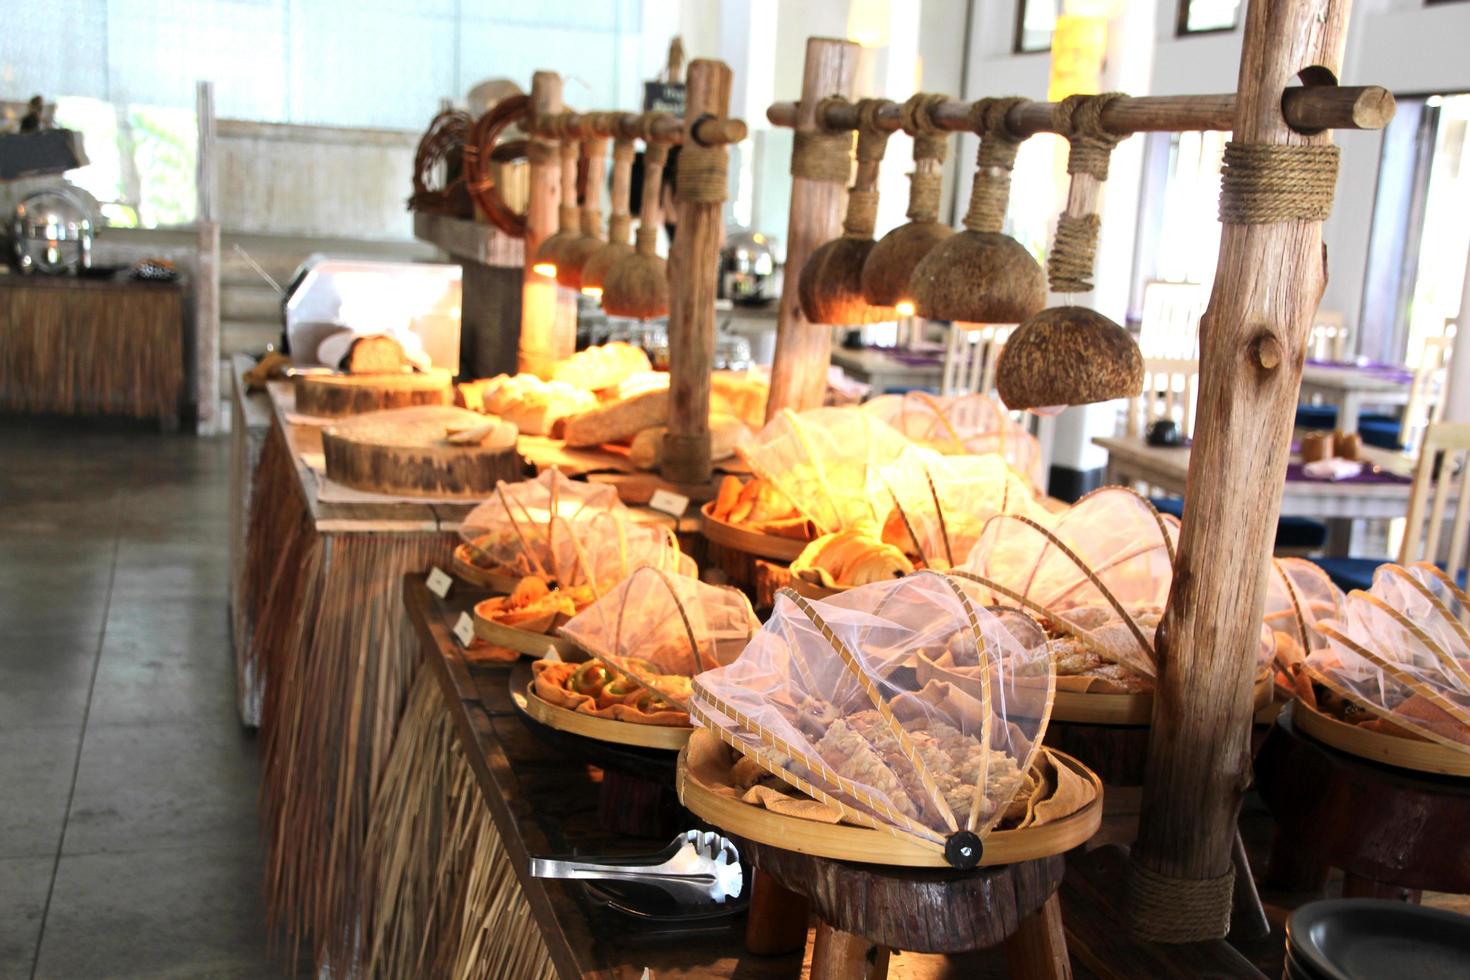 servicio de barra de panadería. lleno de pan y productos de pastelería para los clientes. foto